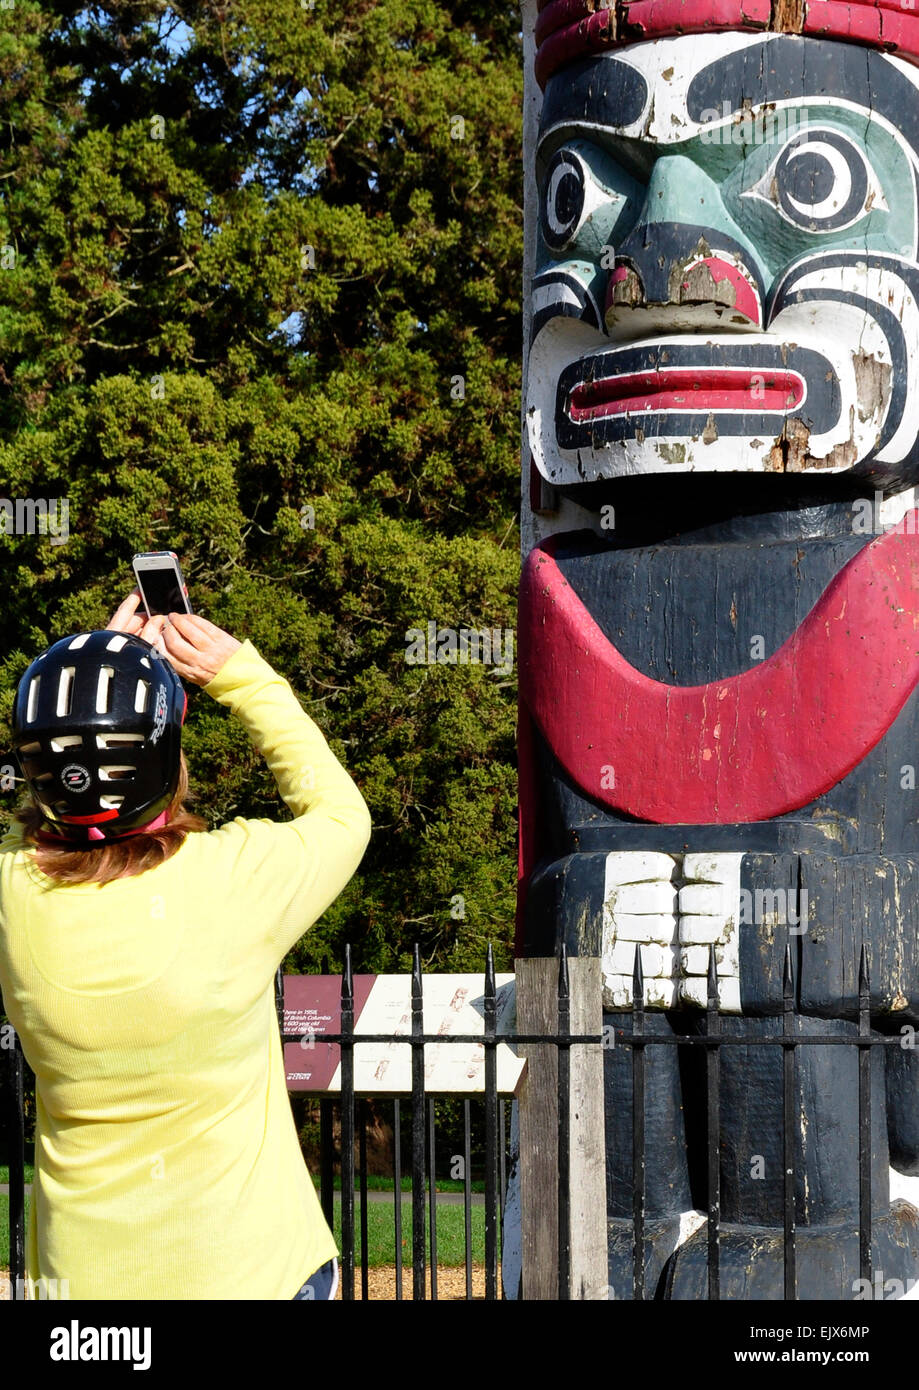 Frau trägt Fahrradhelm - mit digital Phone zu fotografieren geschnitzt Stammes-Gesichts auf hölzernen Totempfahl - Bitte Lächeln!!! Stockfoto